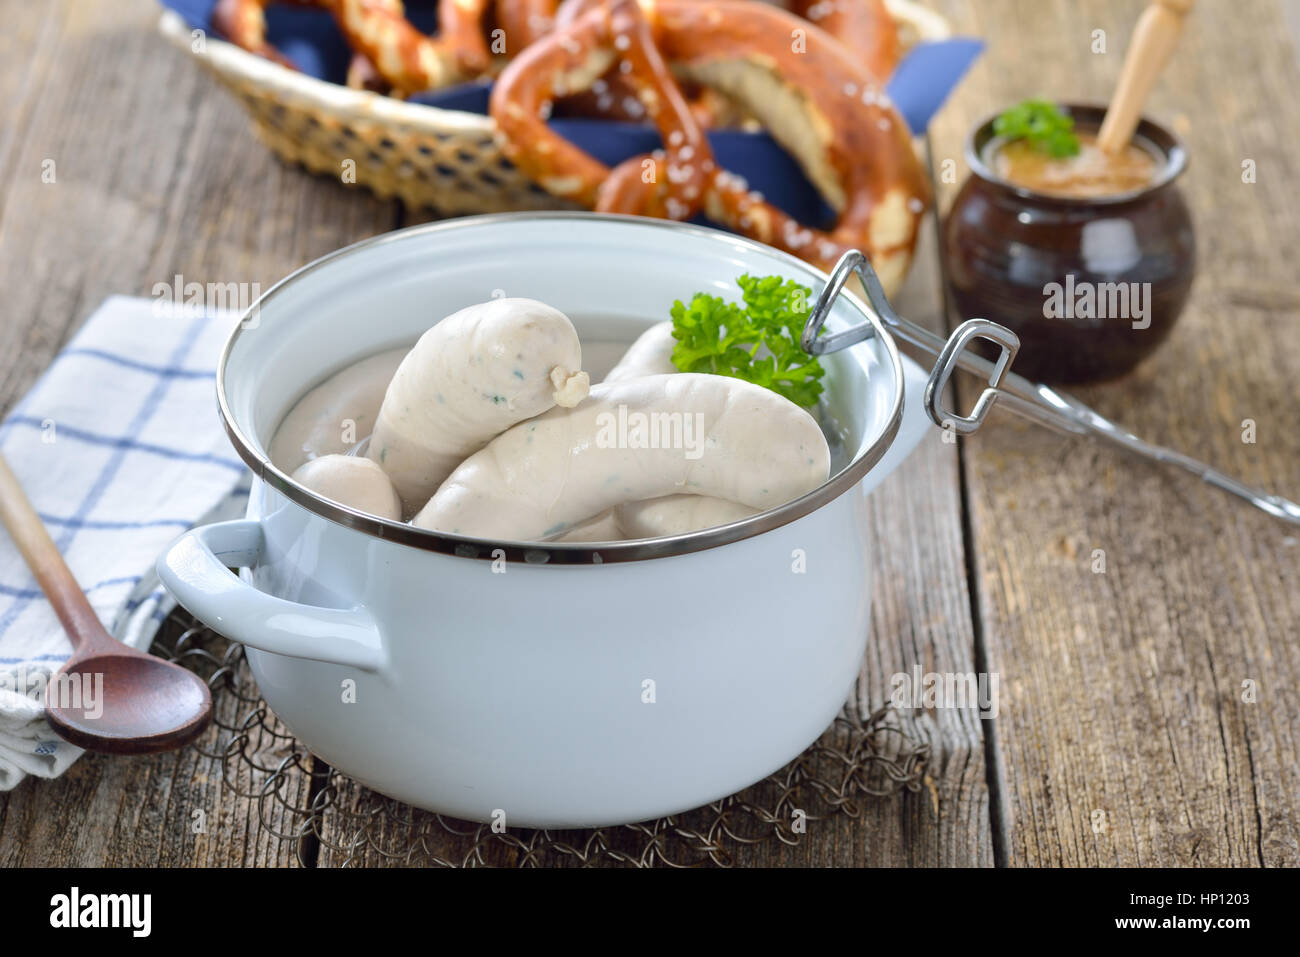 Heißen bayrische Weißwürste in einem Kochtopf Emaille auf einem Holztisch  mit frischen Brezeln und süßem Senf serviert Stockfotografie - Alamy